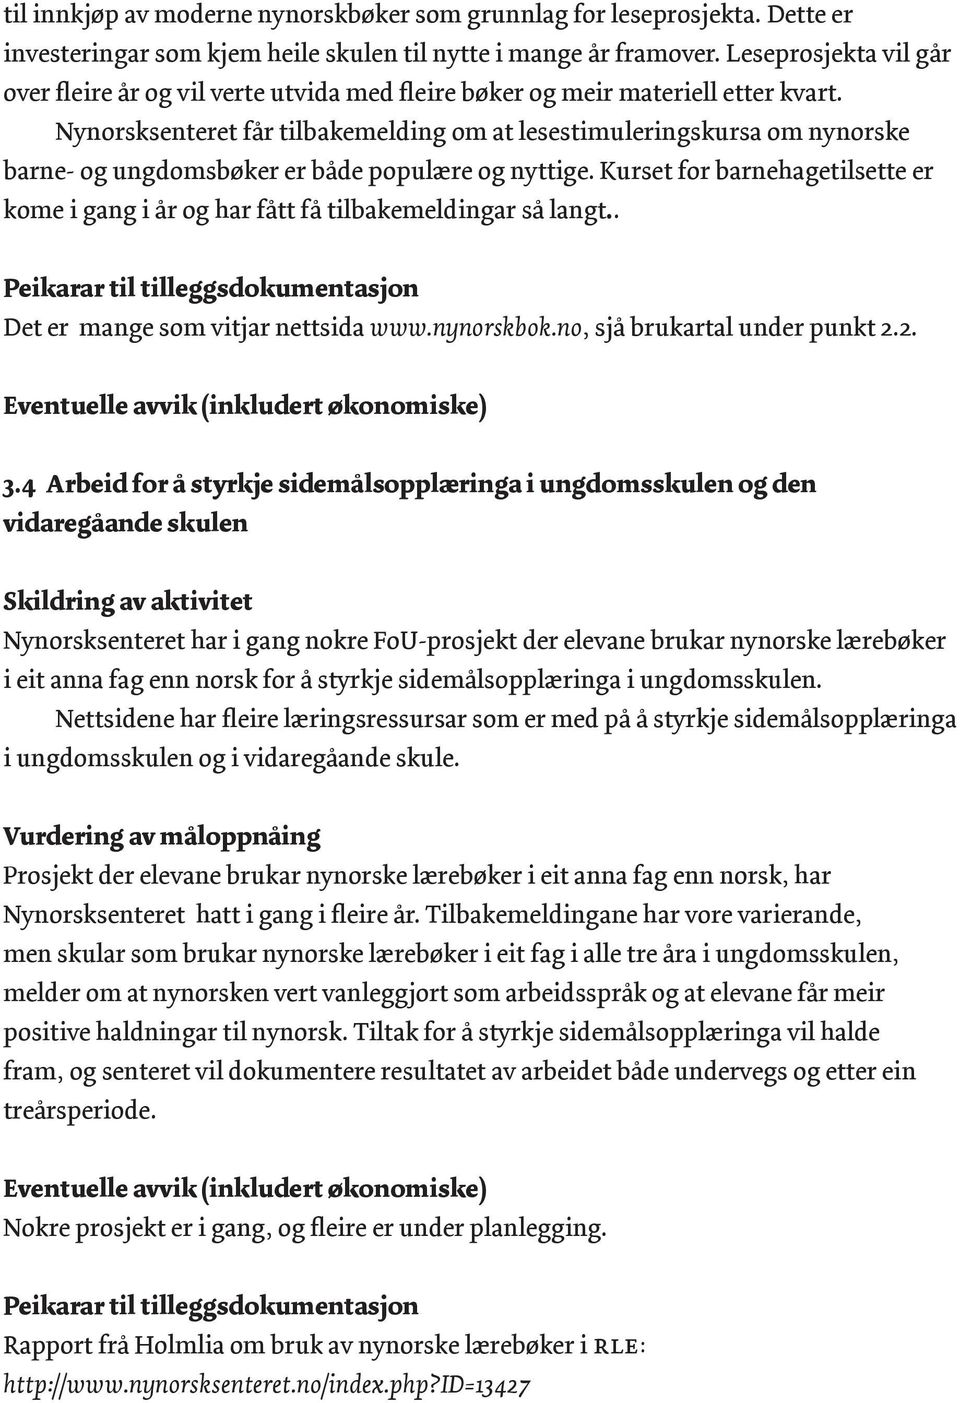 Nynorsksenteret får tilbakemelding om at lesestimuleringskursa om nynorske barne- og ungdomsbøker er både populære og nyttige.